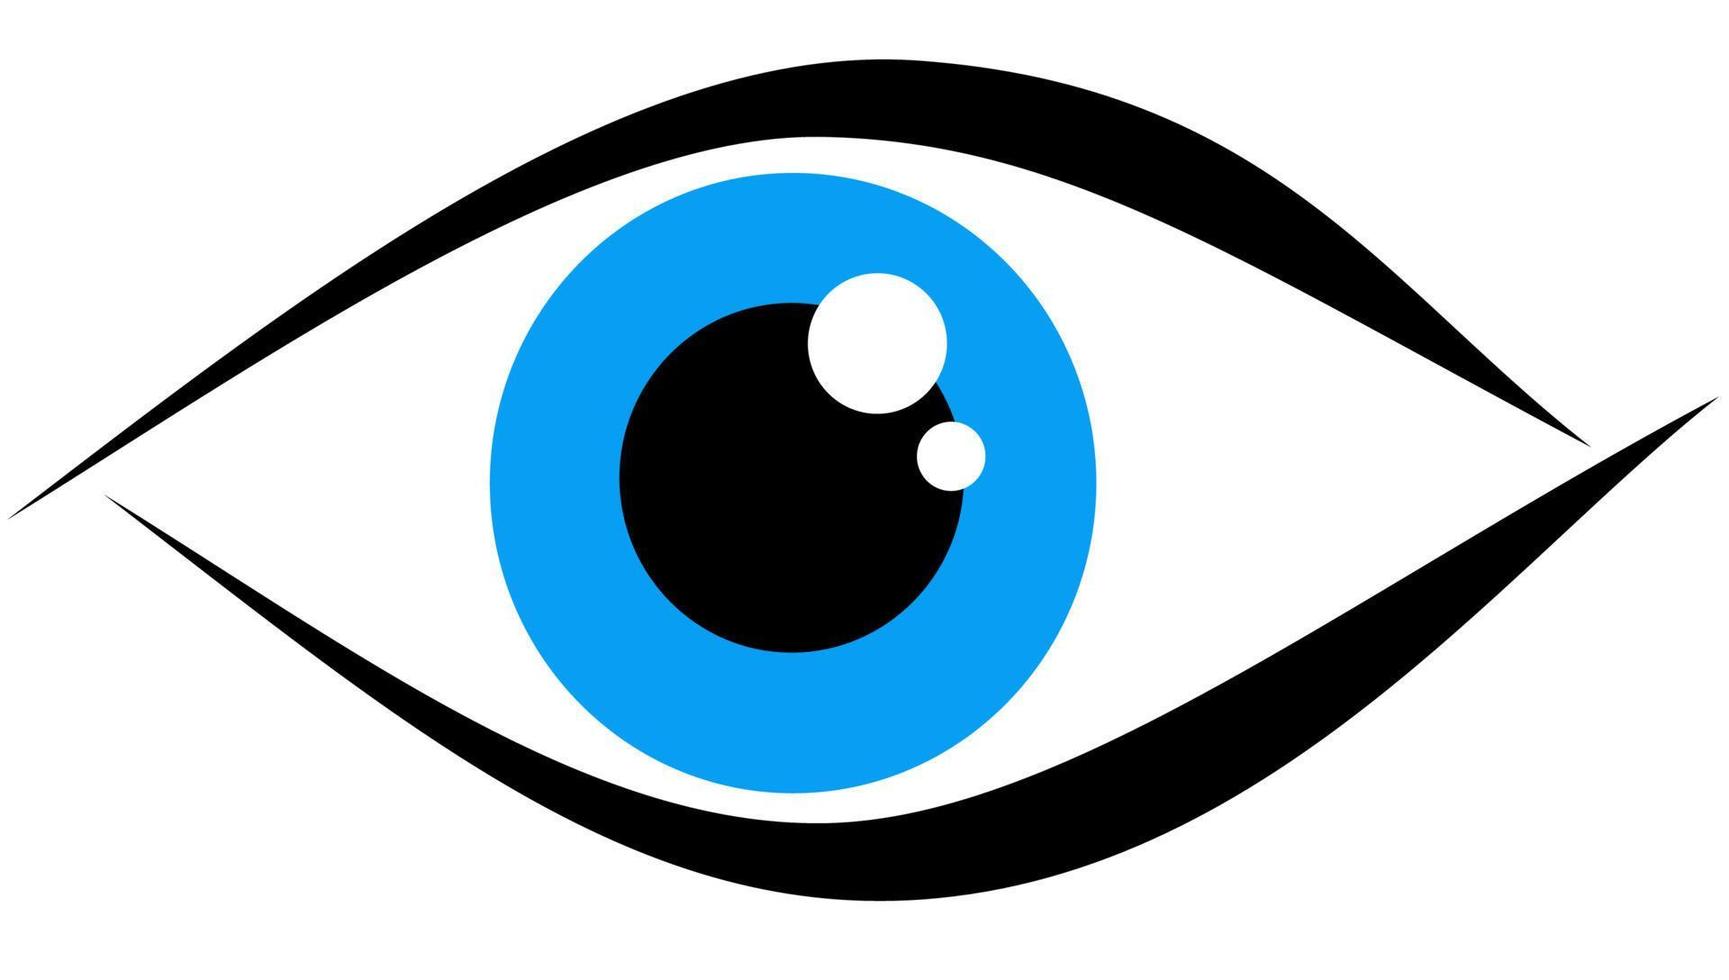 Logo mit blauem Auge vektor